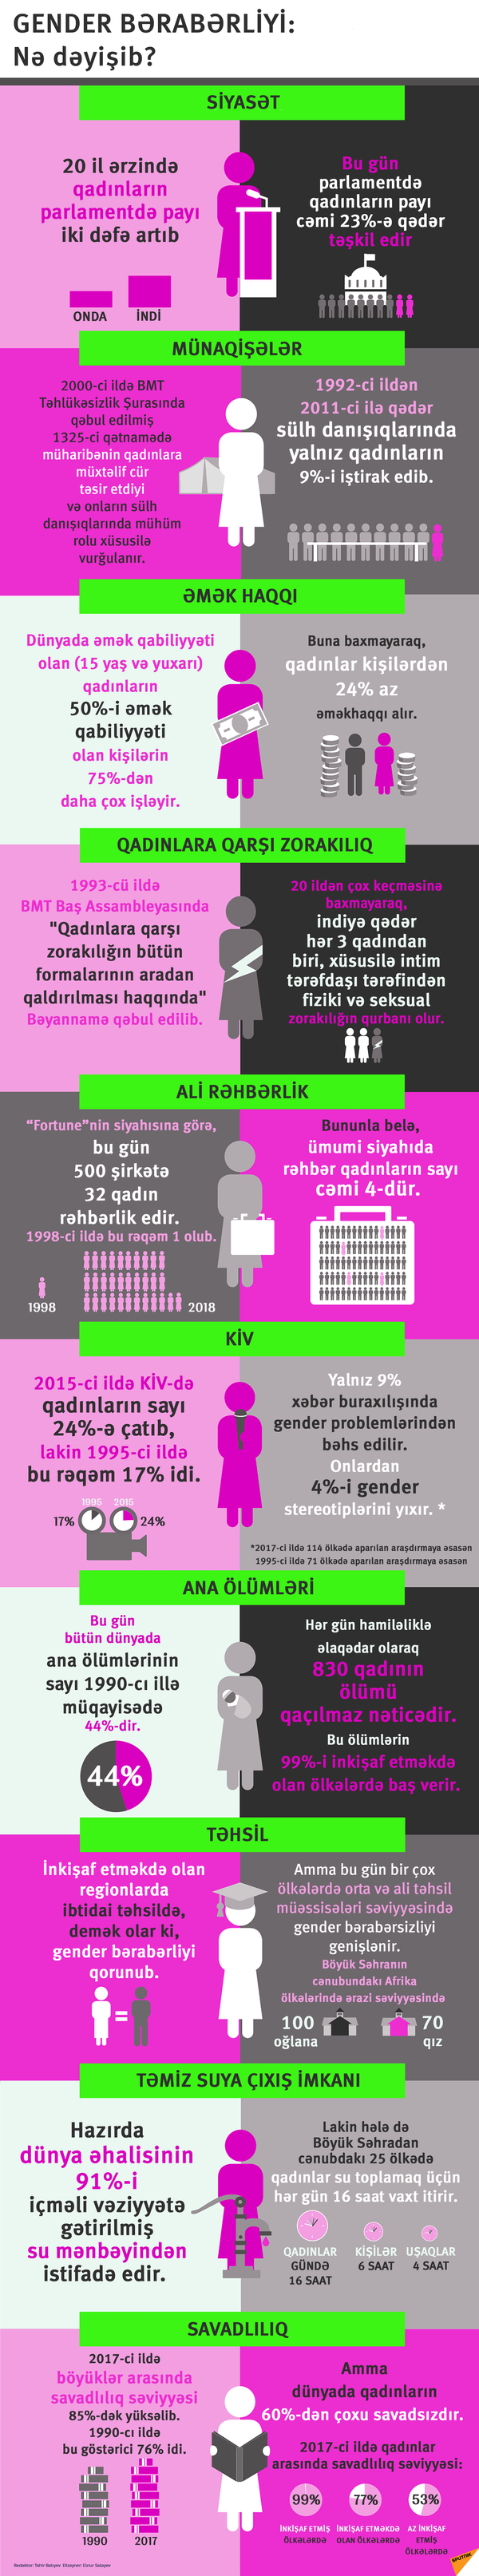 Gender bərabərliyi - Sputnik Azərbaycan